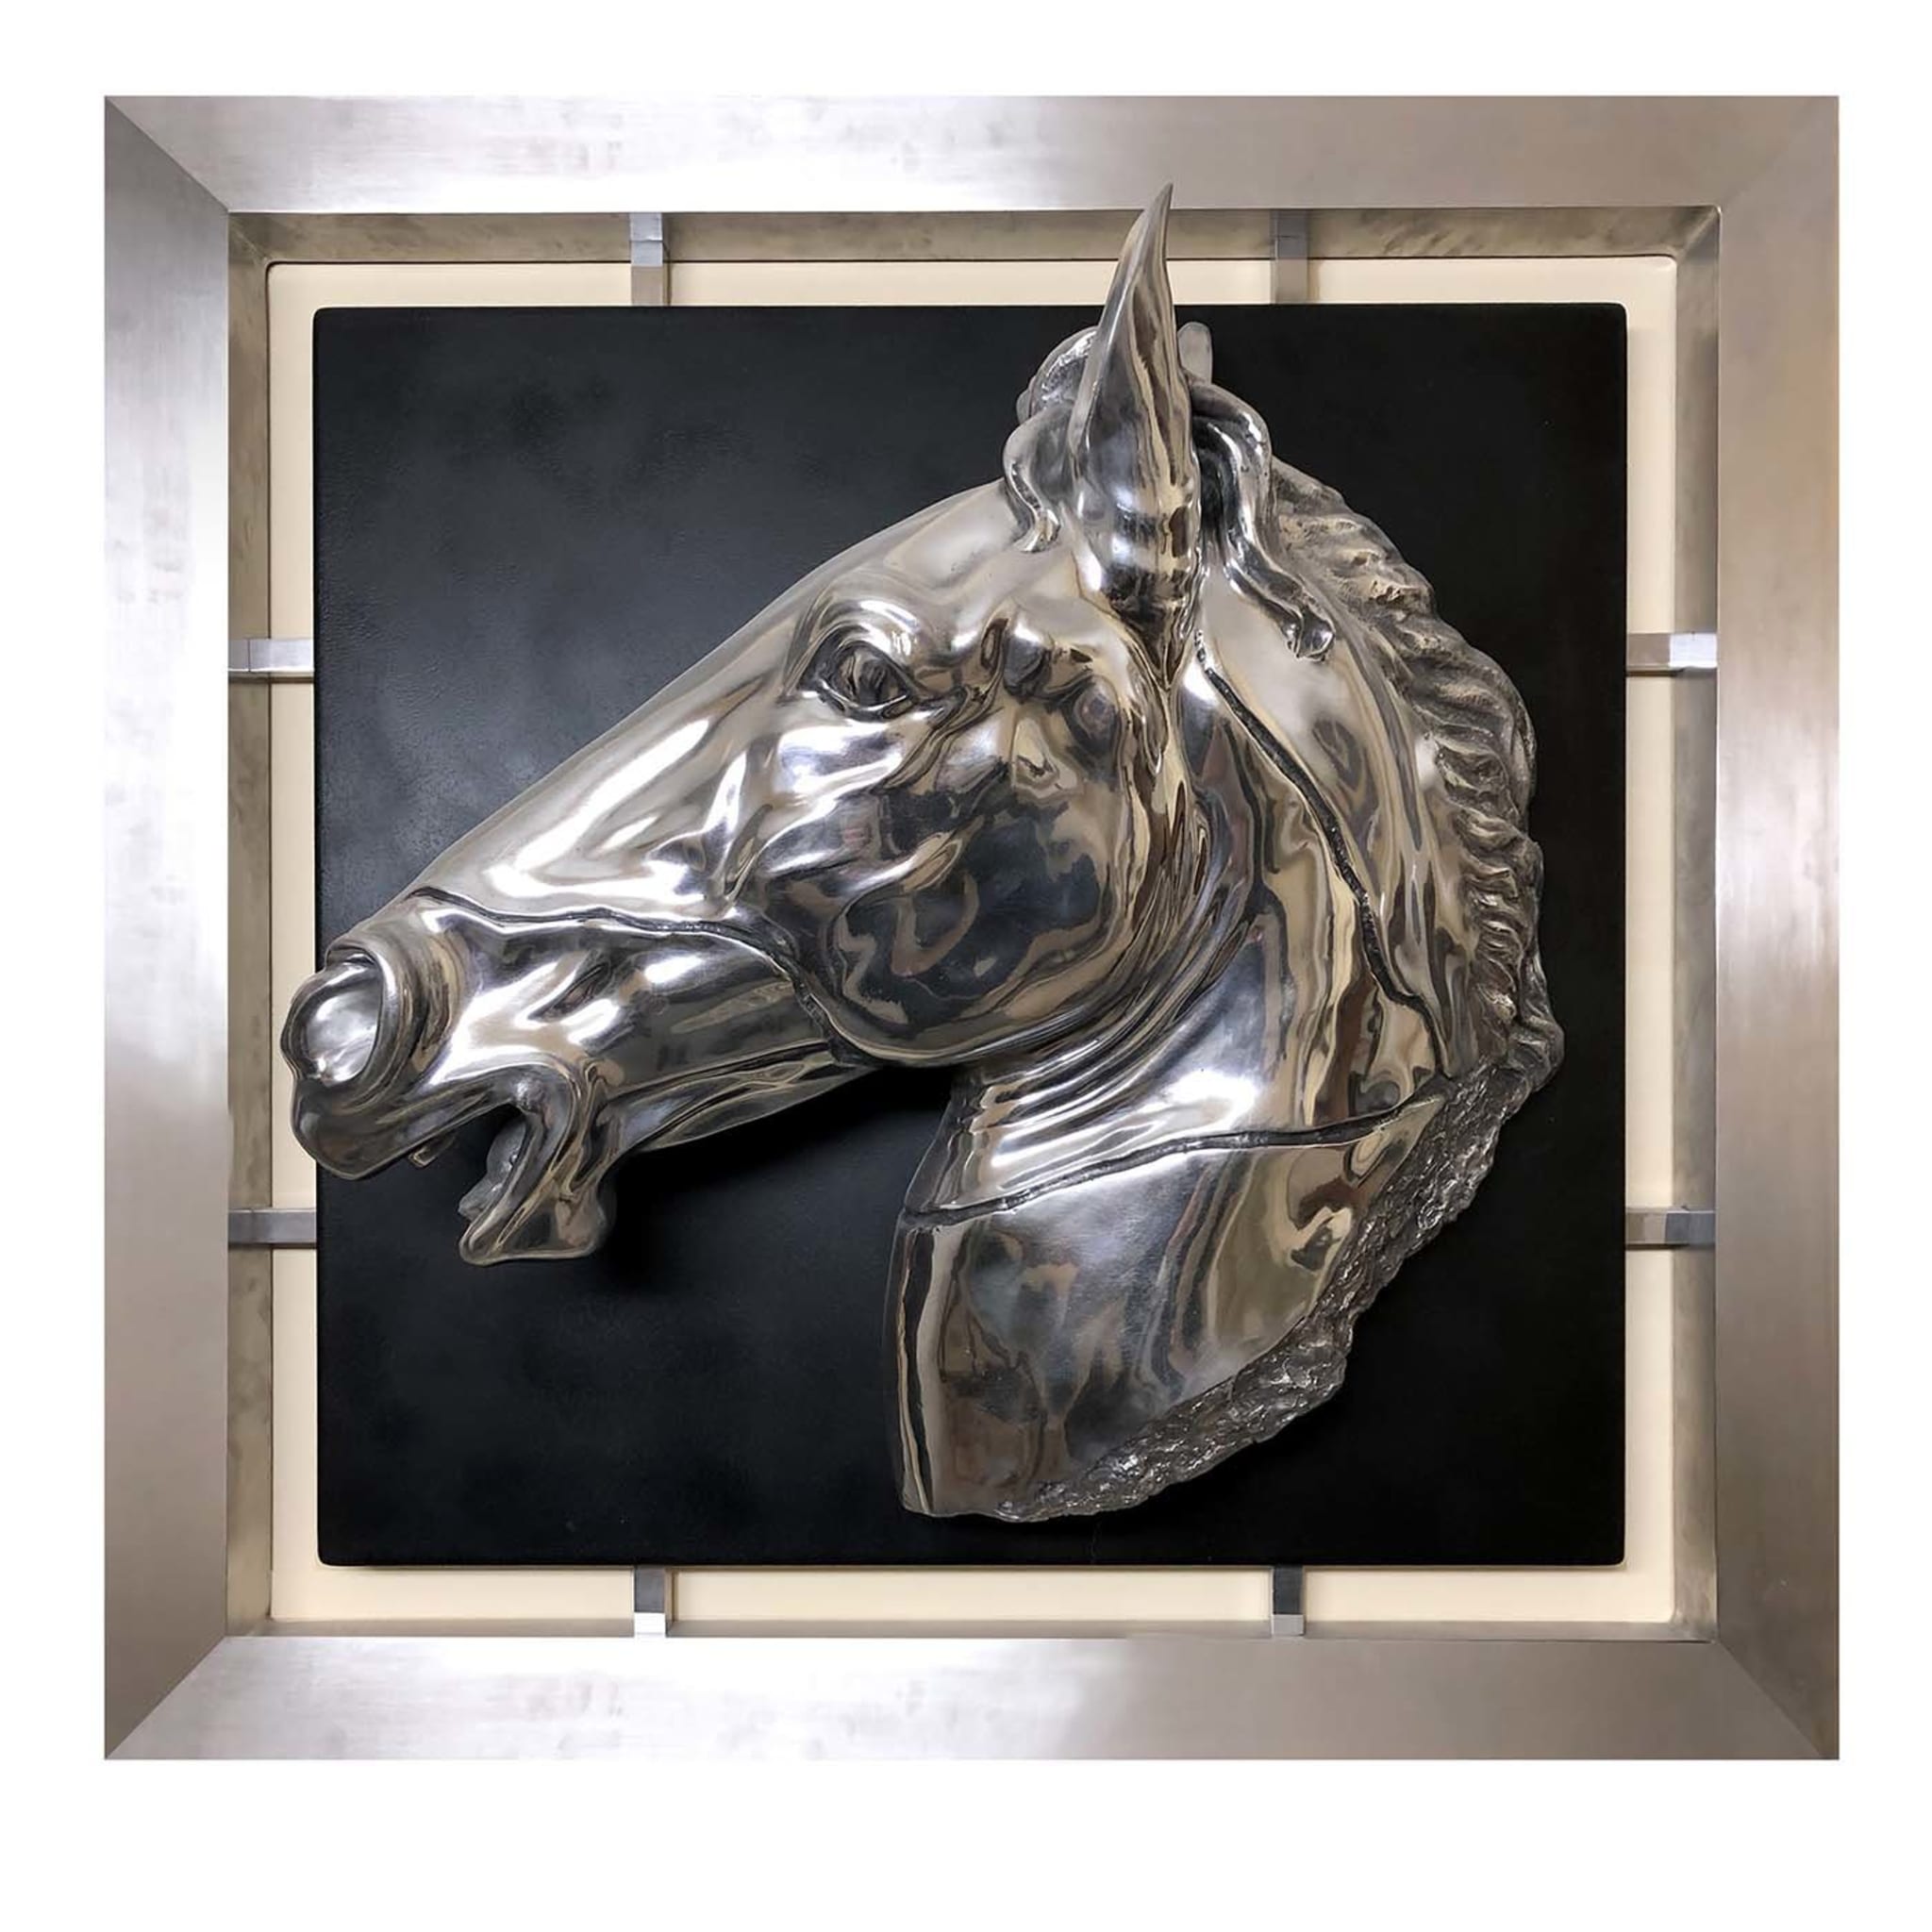 Panel de aluminio con cabeza de caballo - Vista principal